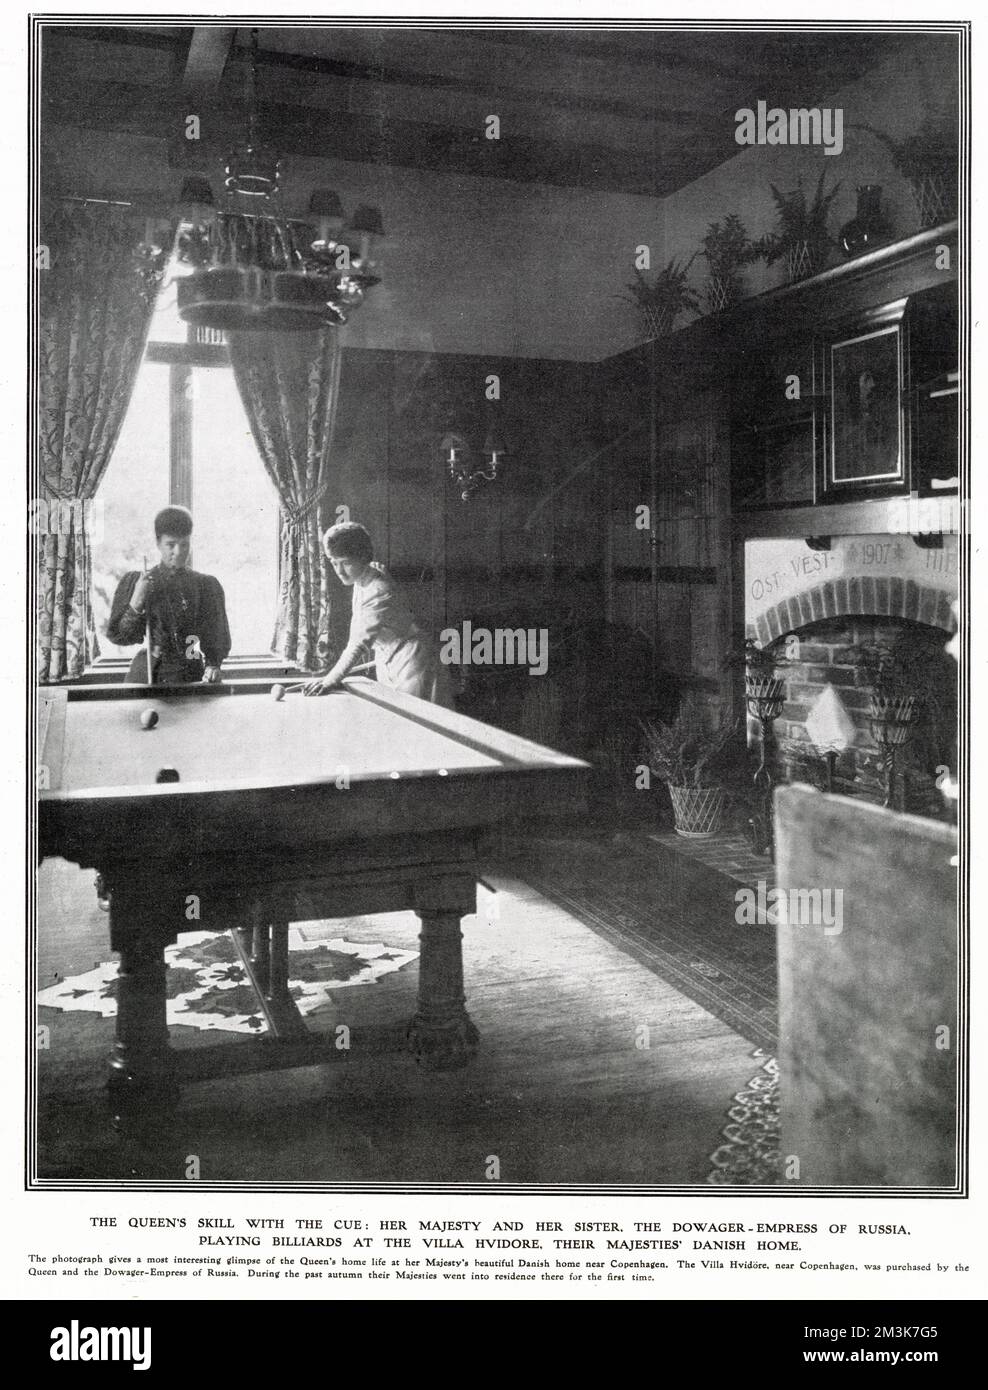 La reine Alexandra et sa sœur, l'impératrice Marie de Russie, jouent au billard en 1907 dans leur maison, la Villa Hvidore près de Copenhague. Banque D'Images